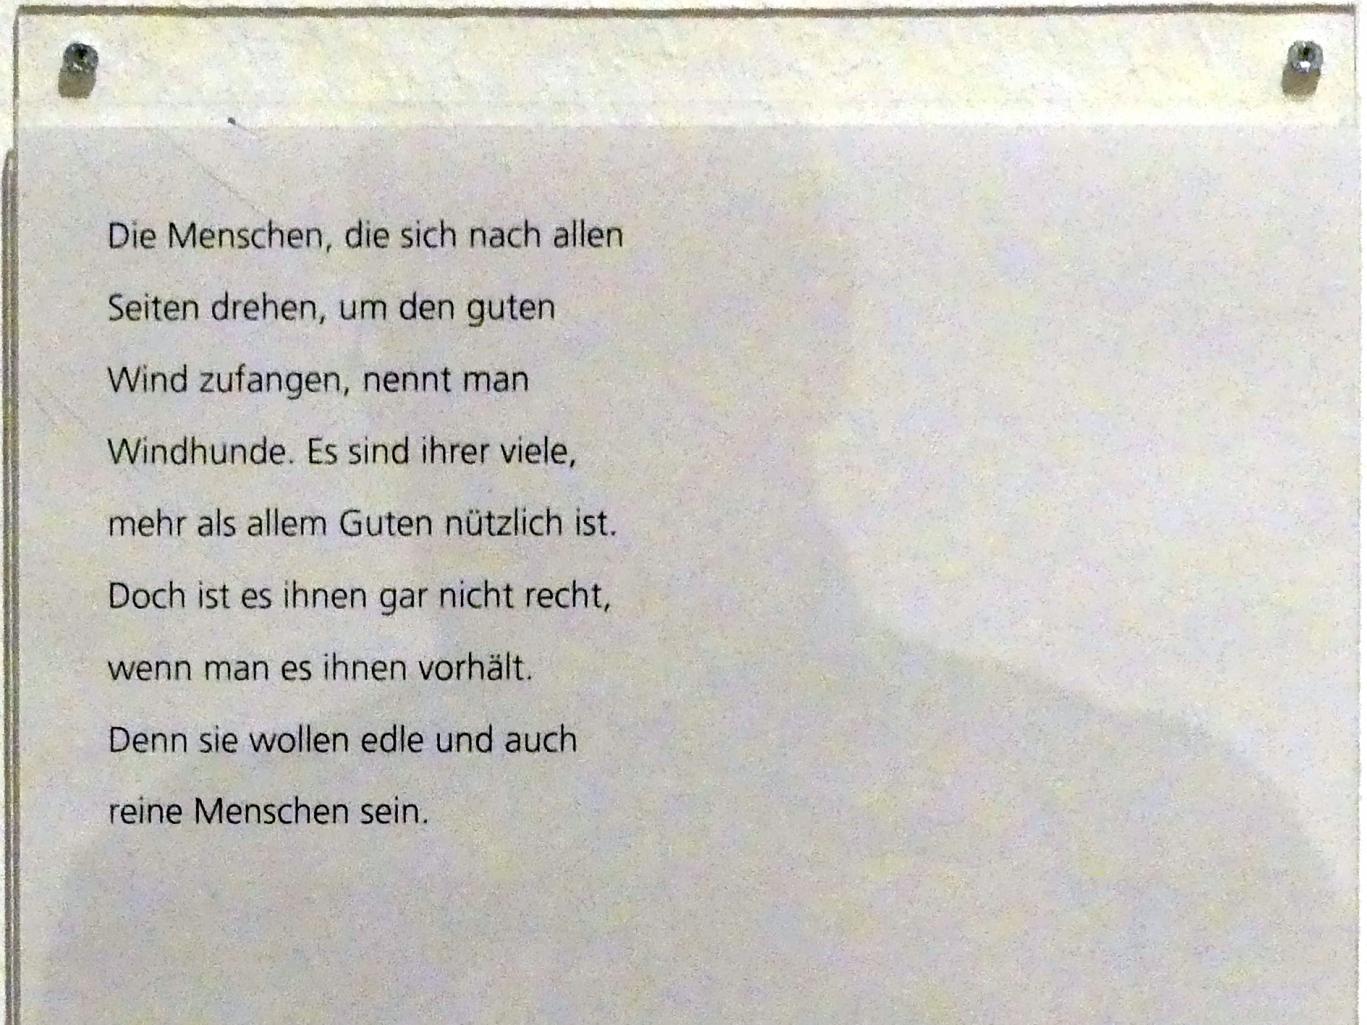 Adolf Hölzel (1880–1933), Schriftsockelblatt "Die Menschen...", Schweinfurt, Museum Georg Schäfer, Ausstellung Adolf Hölzel vom 03.02.-01.05.2019, Saal 8, Undatiert, Bild 5/5